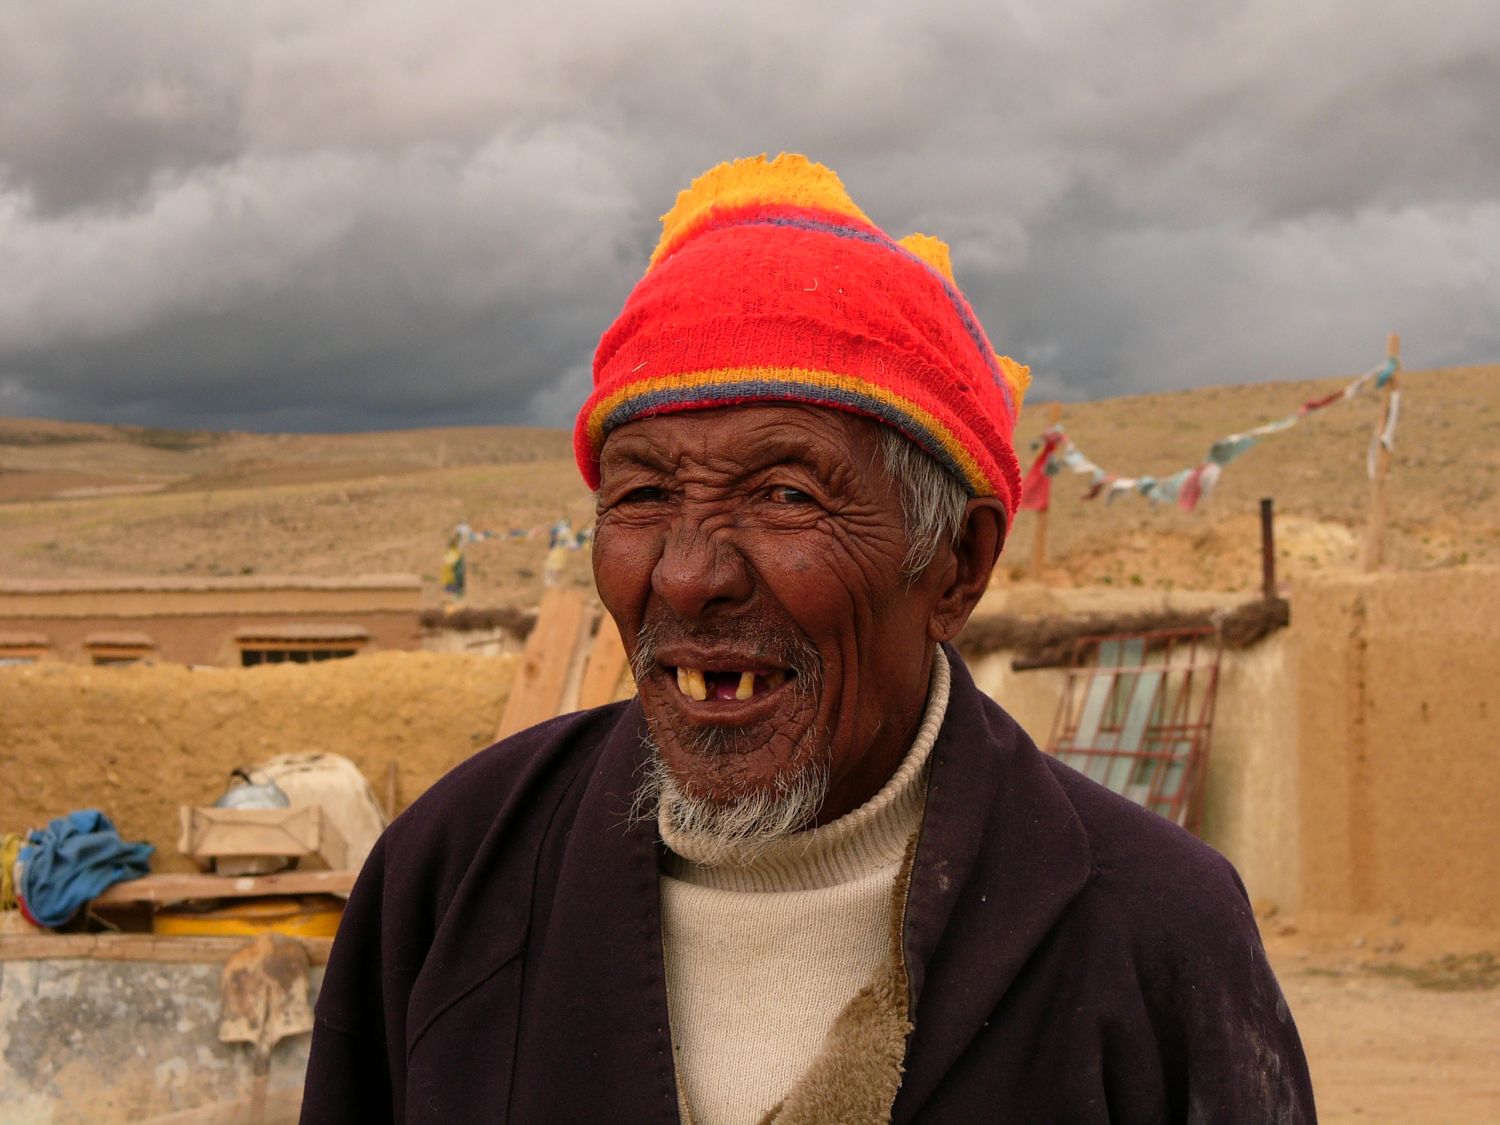 Leben in Tibet